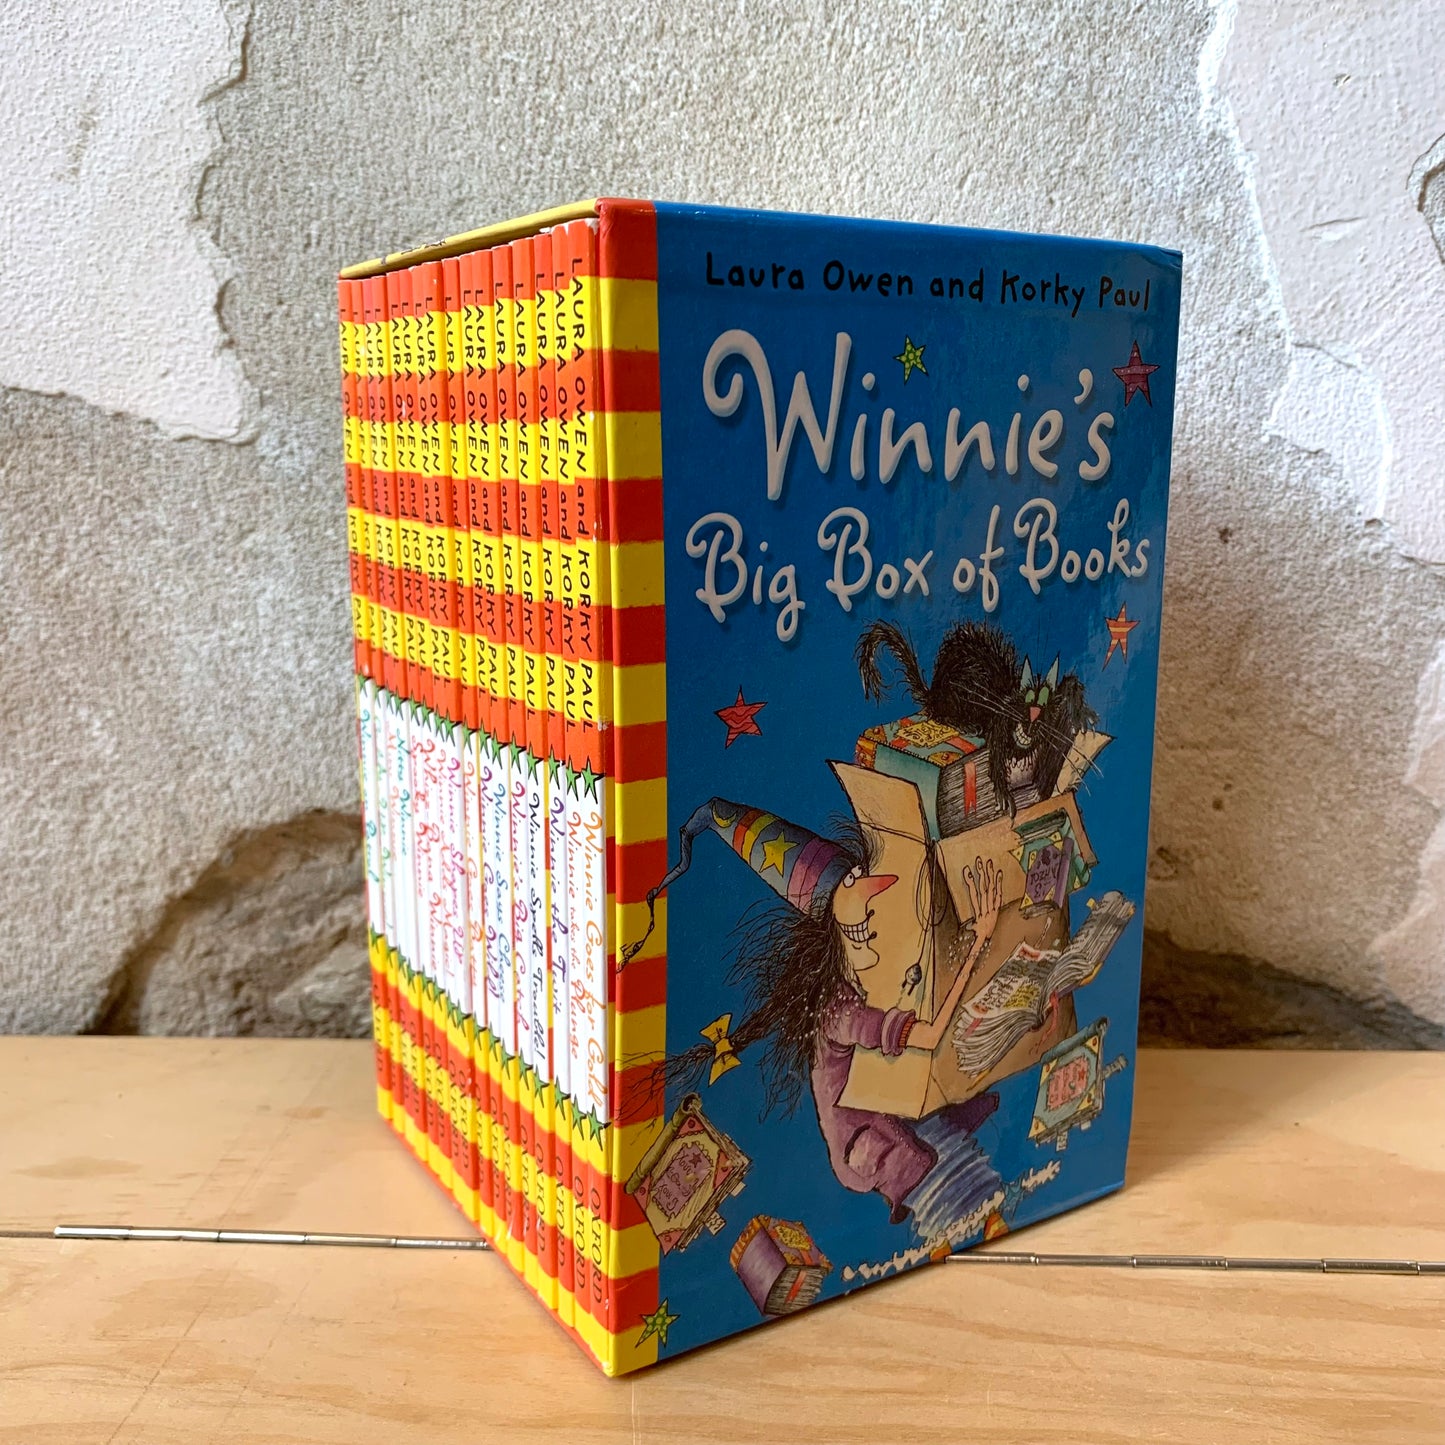 Winnie's Big Box of Books